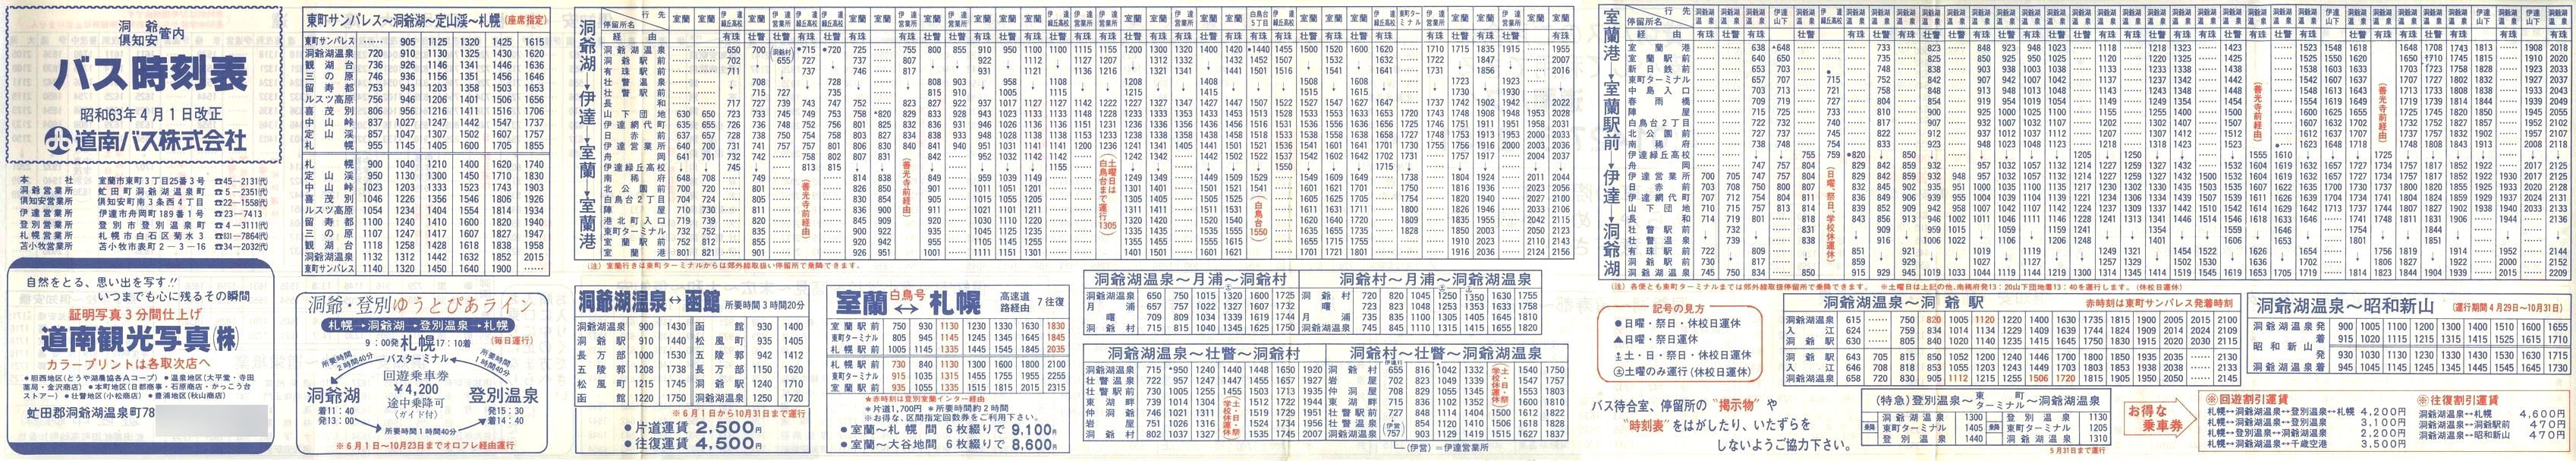 1988-04-01改正_道南バス_洞爺・倶知安管内時刻表表面